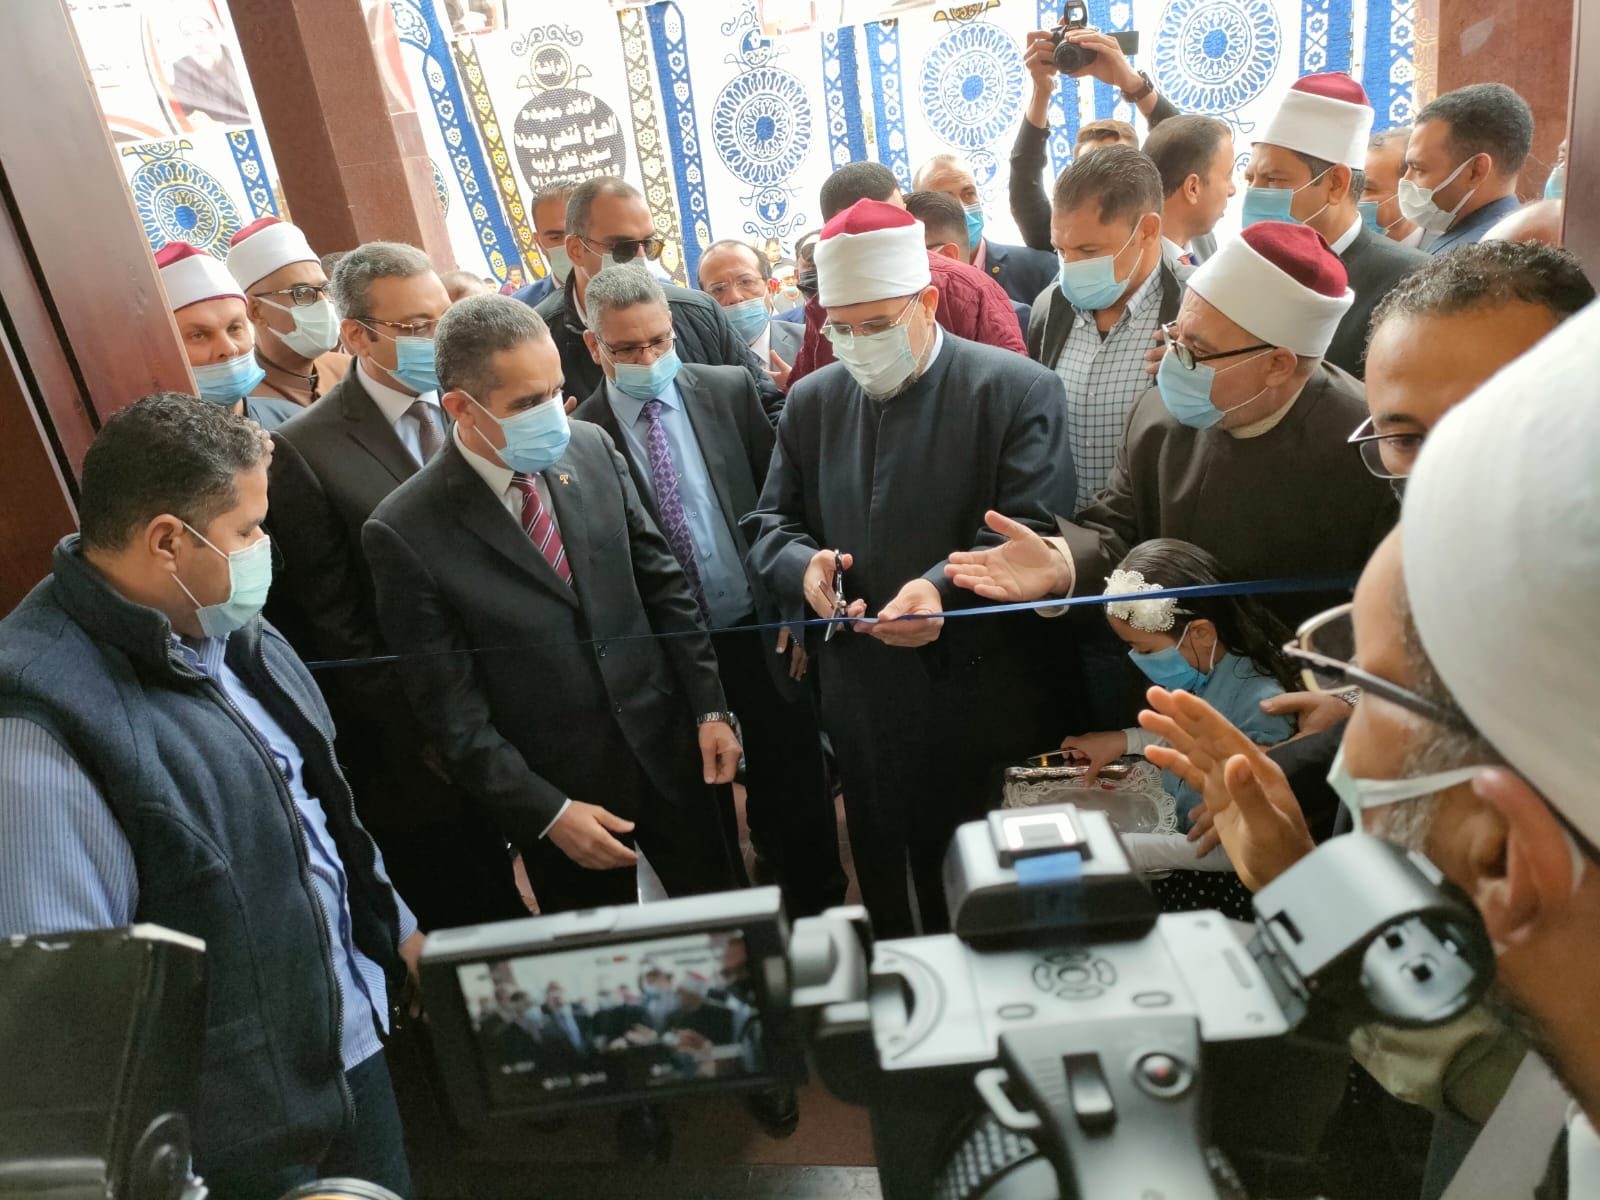 وزير الأوقاف يفتتح المسجد الكبير بعزبة الشرملسي بالمحلة بتكلفة 4 مليون جنيه